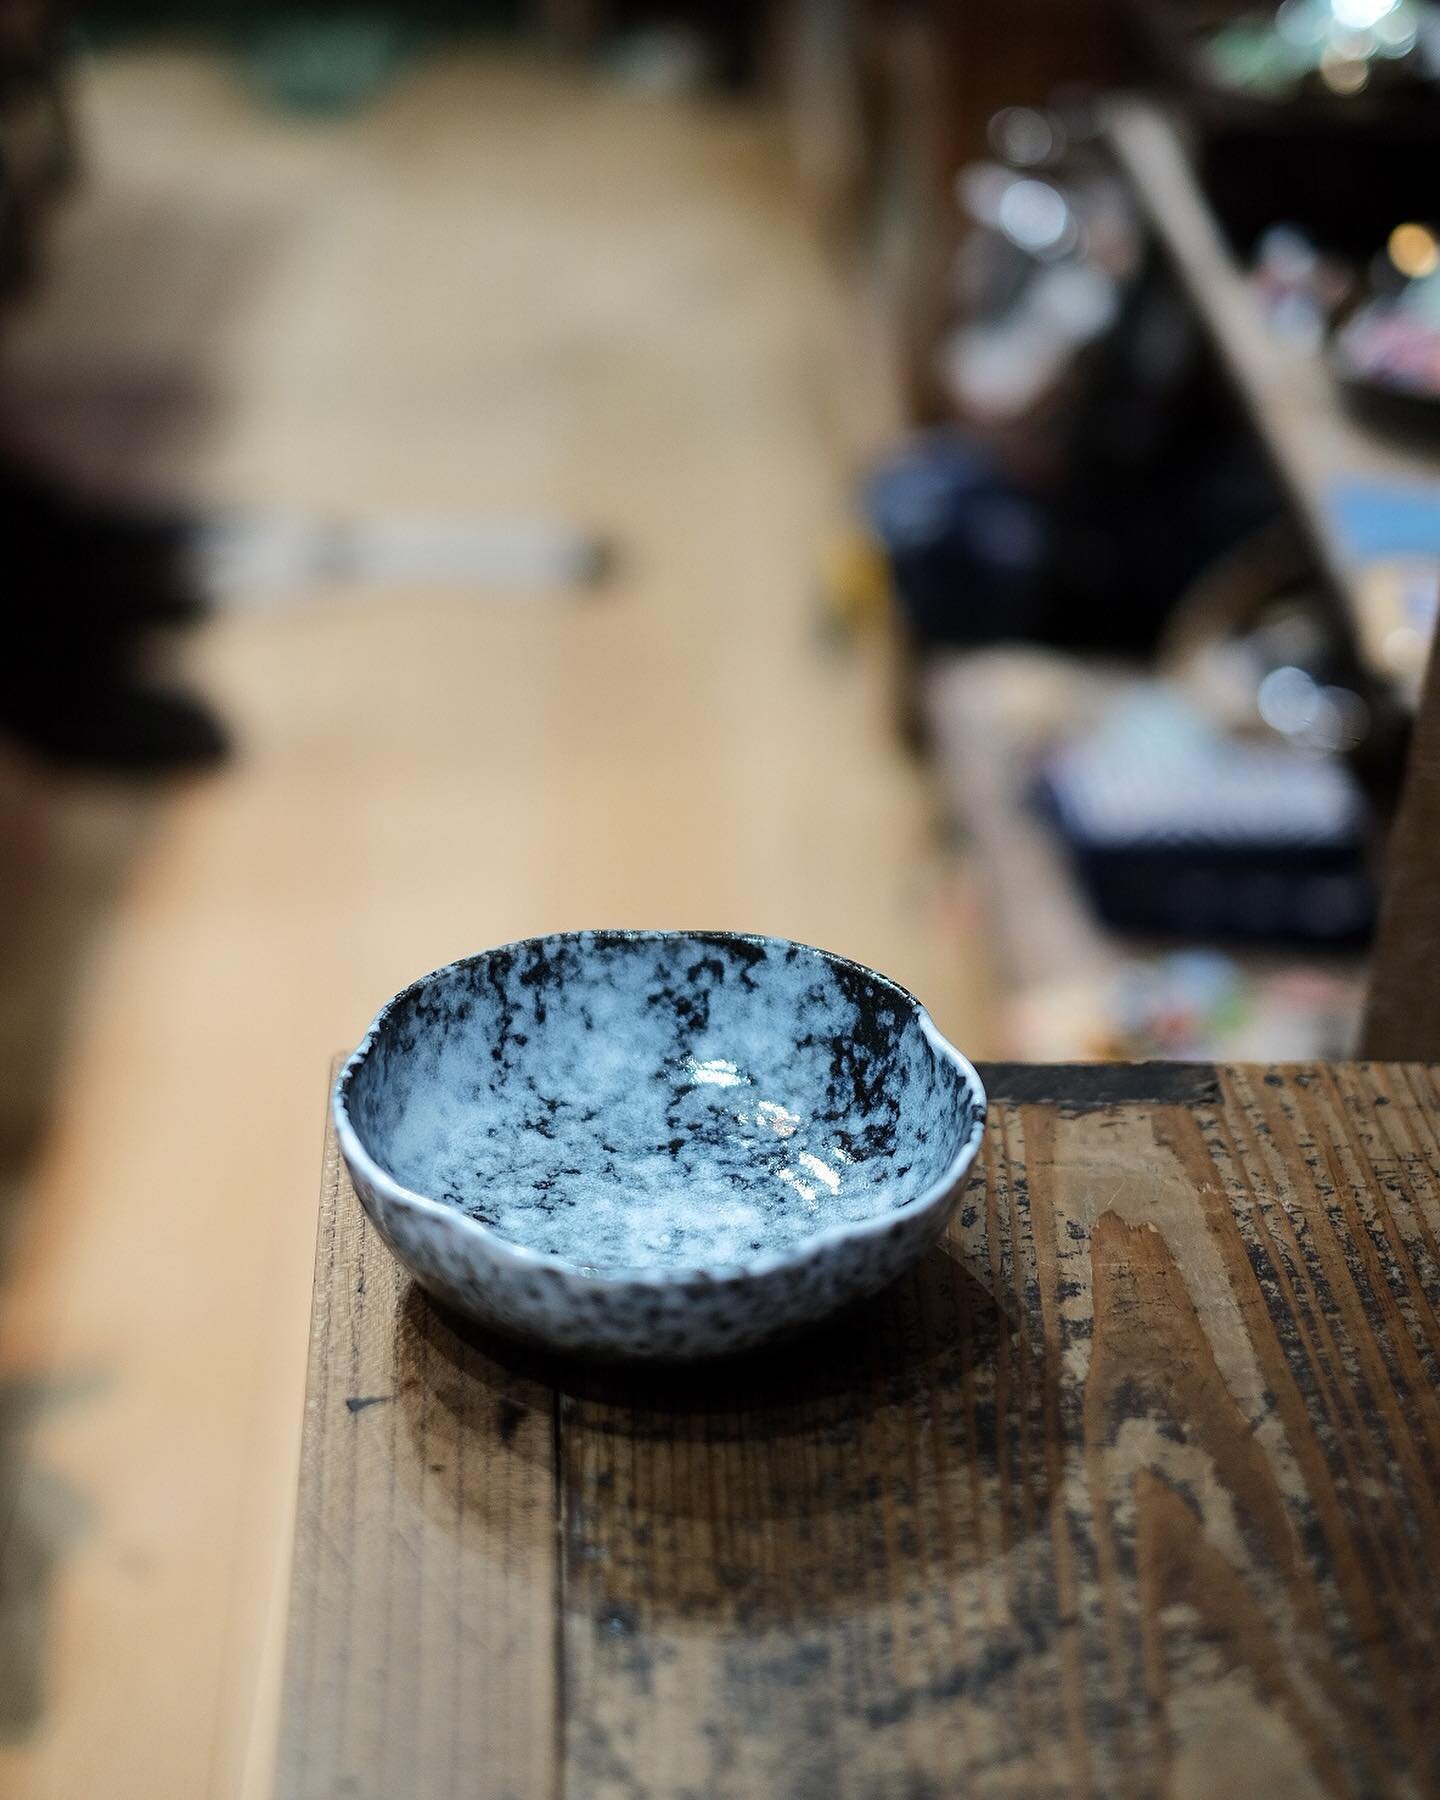 Awayuki, Japanese bowl
.
#sophadiffusion #awayuki #yugenlab #trad #design #B2B #artisanat #vaisselle #homeware #authentique #wholesaler #pattern #decoration #artdelatable #kitchenware #interior #porcelaine #maison #japanese #tableware #professional #